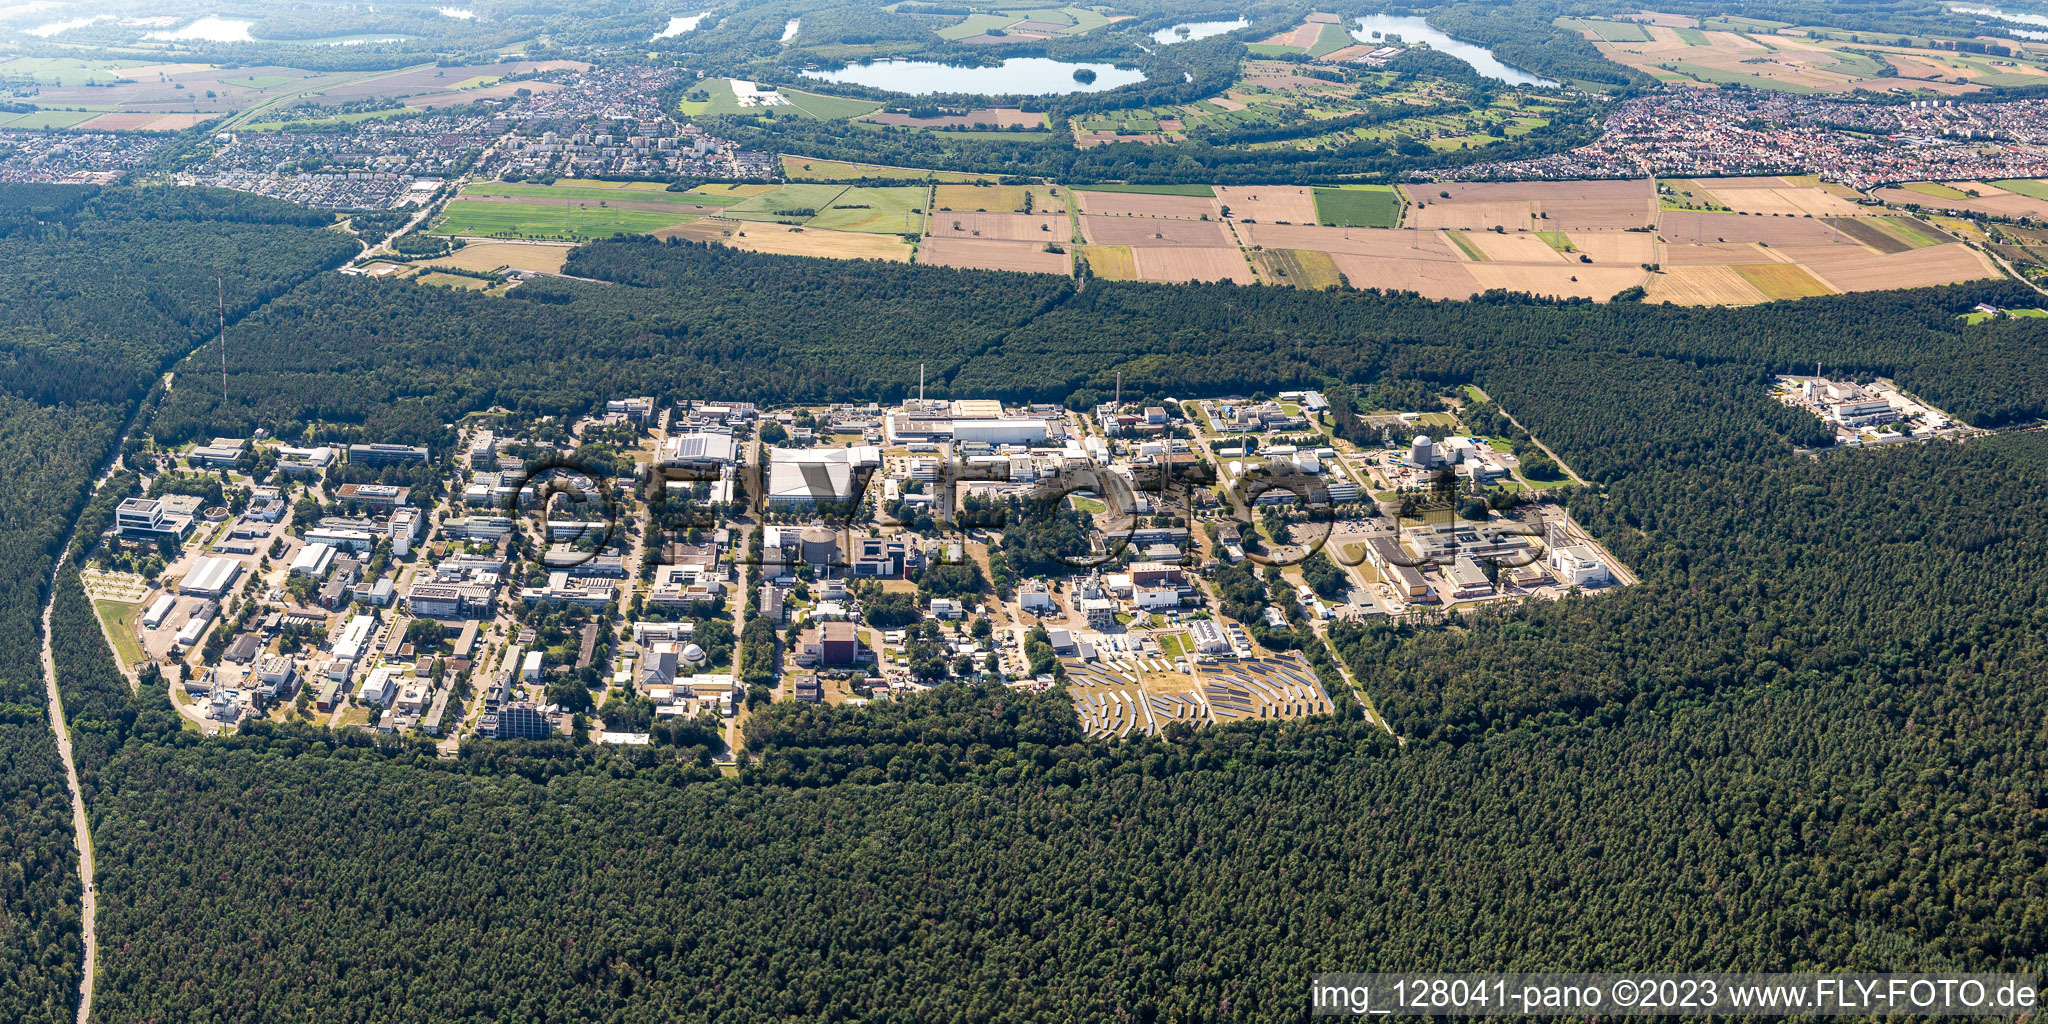 Bâtiment de recherche et complexe de bureaux du KIT Campus Nord (anciennement Centre de recherche nucléaire de Karlsruhe) à le quartier Leopoldshafen in Eggenstein-Leopoldshafen dans le département Bade-Wurtemberg, Allemagne hors des airs